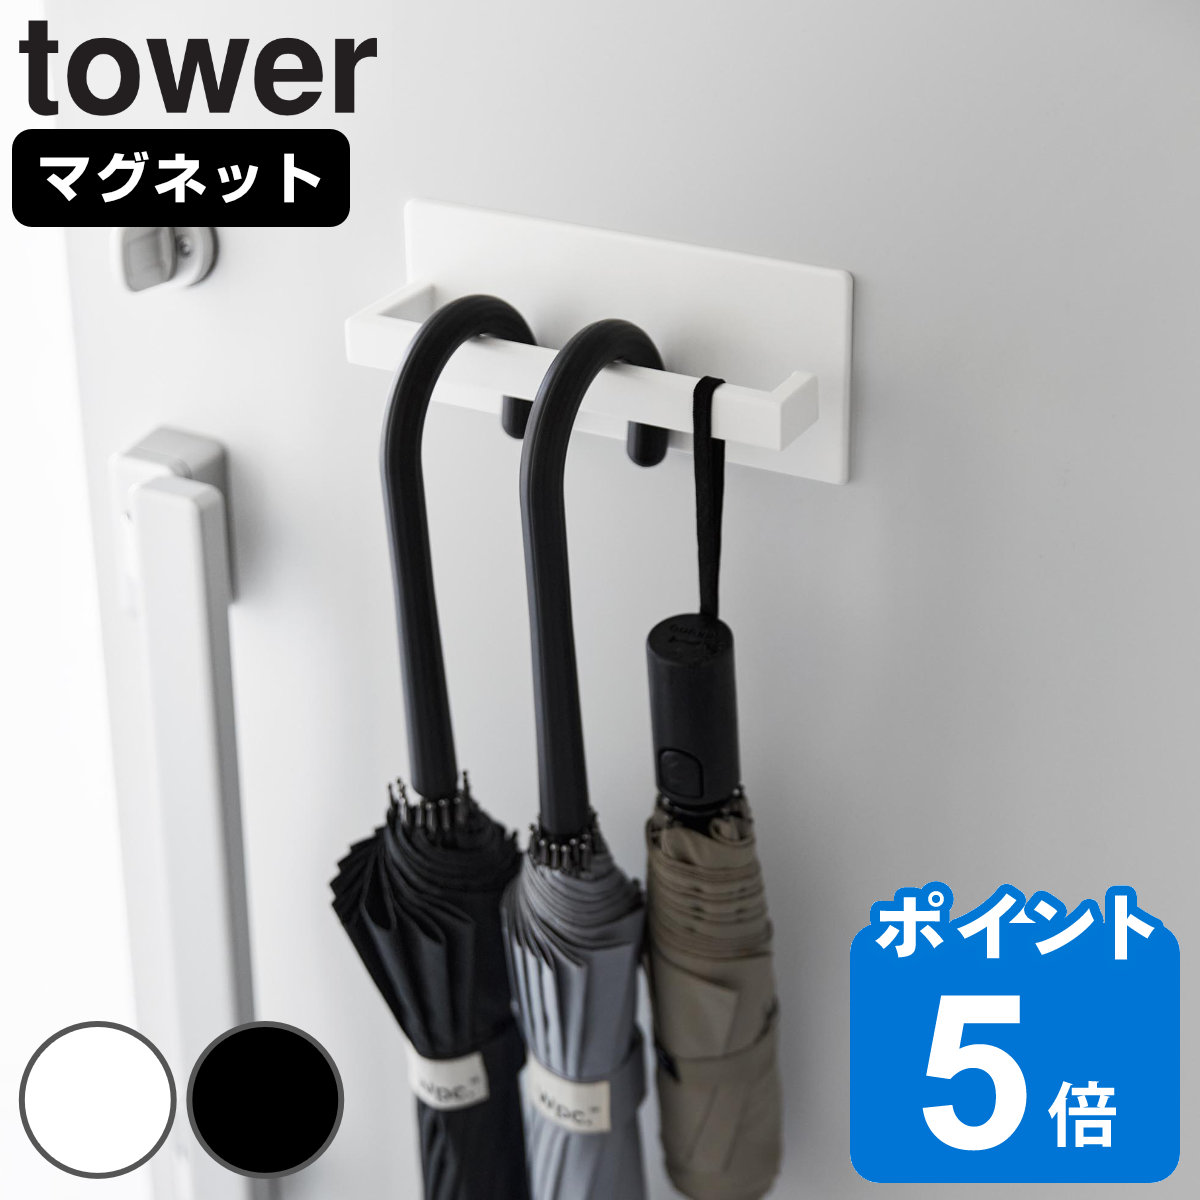 山崎実業 tower マグネットアンブレラハンガー タワー